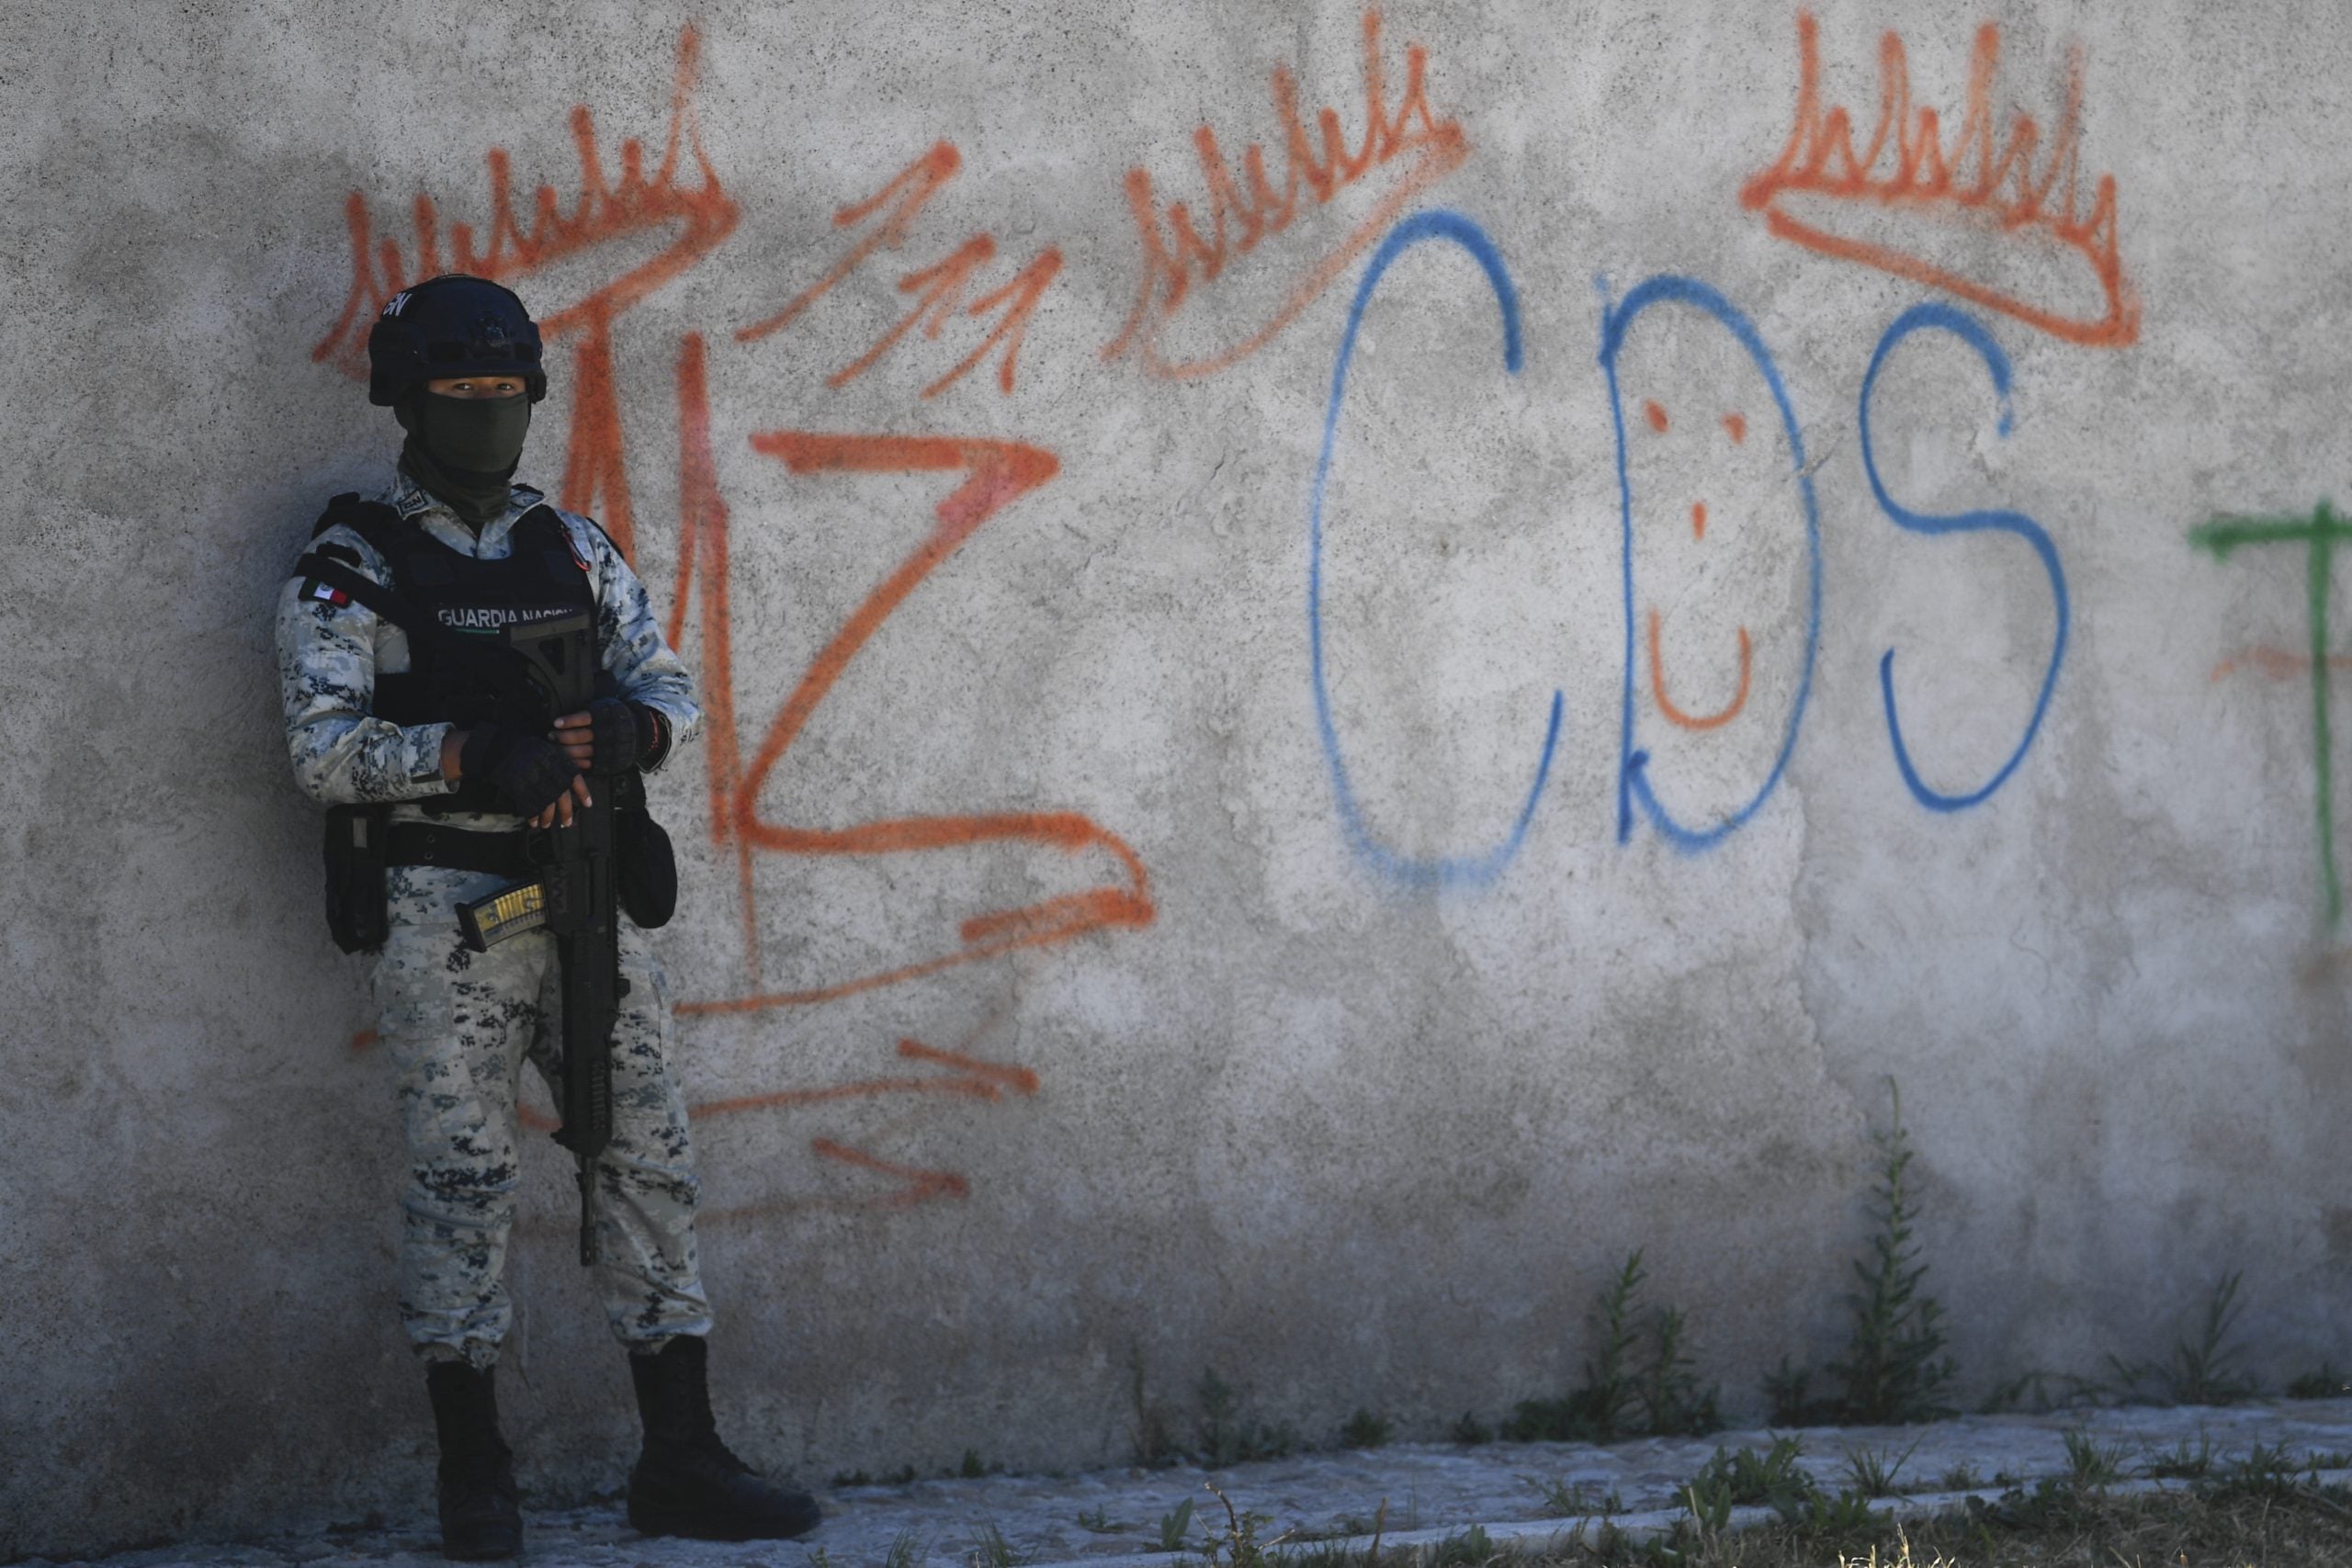 Un guardia junto a unos grafitis del narcotraficante Mayo Zambada (MZ) y el grupo criminal "Cartel de Sinaloa" (CDS), en la vereda Palmas Altas.